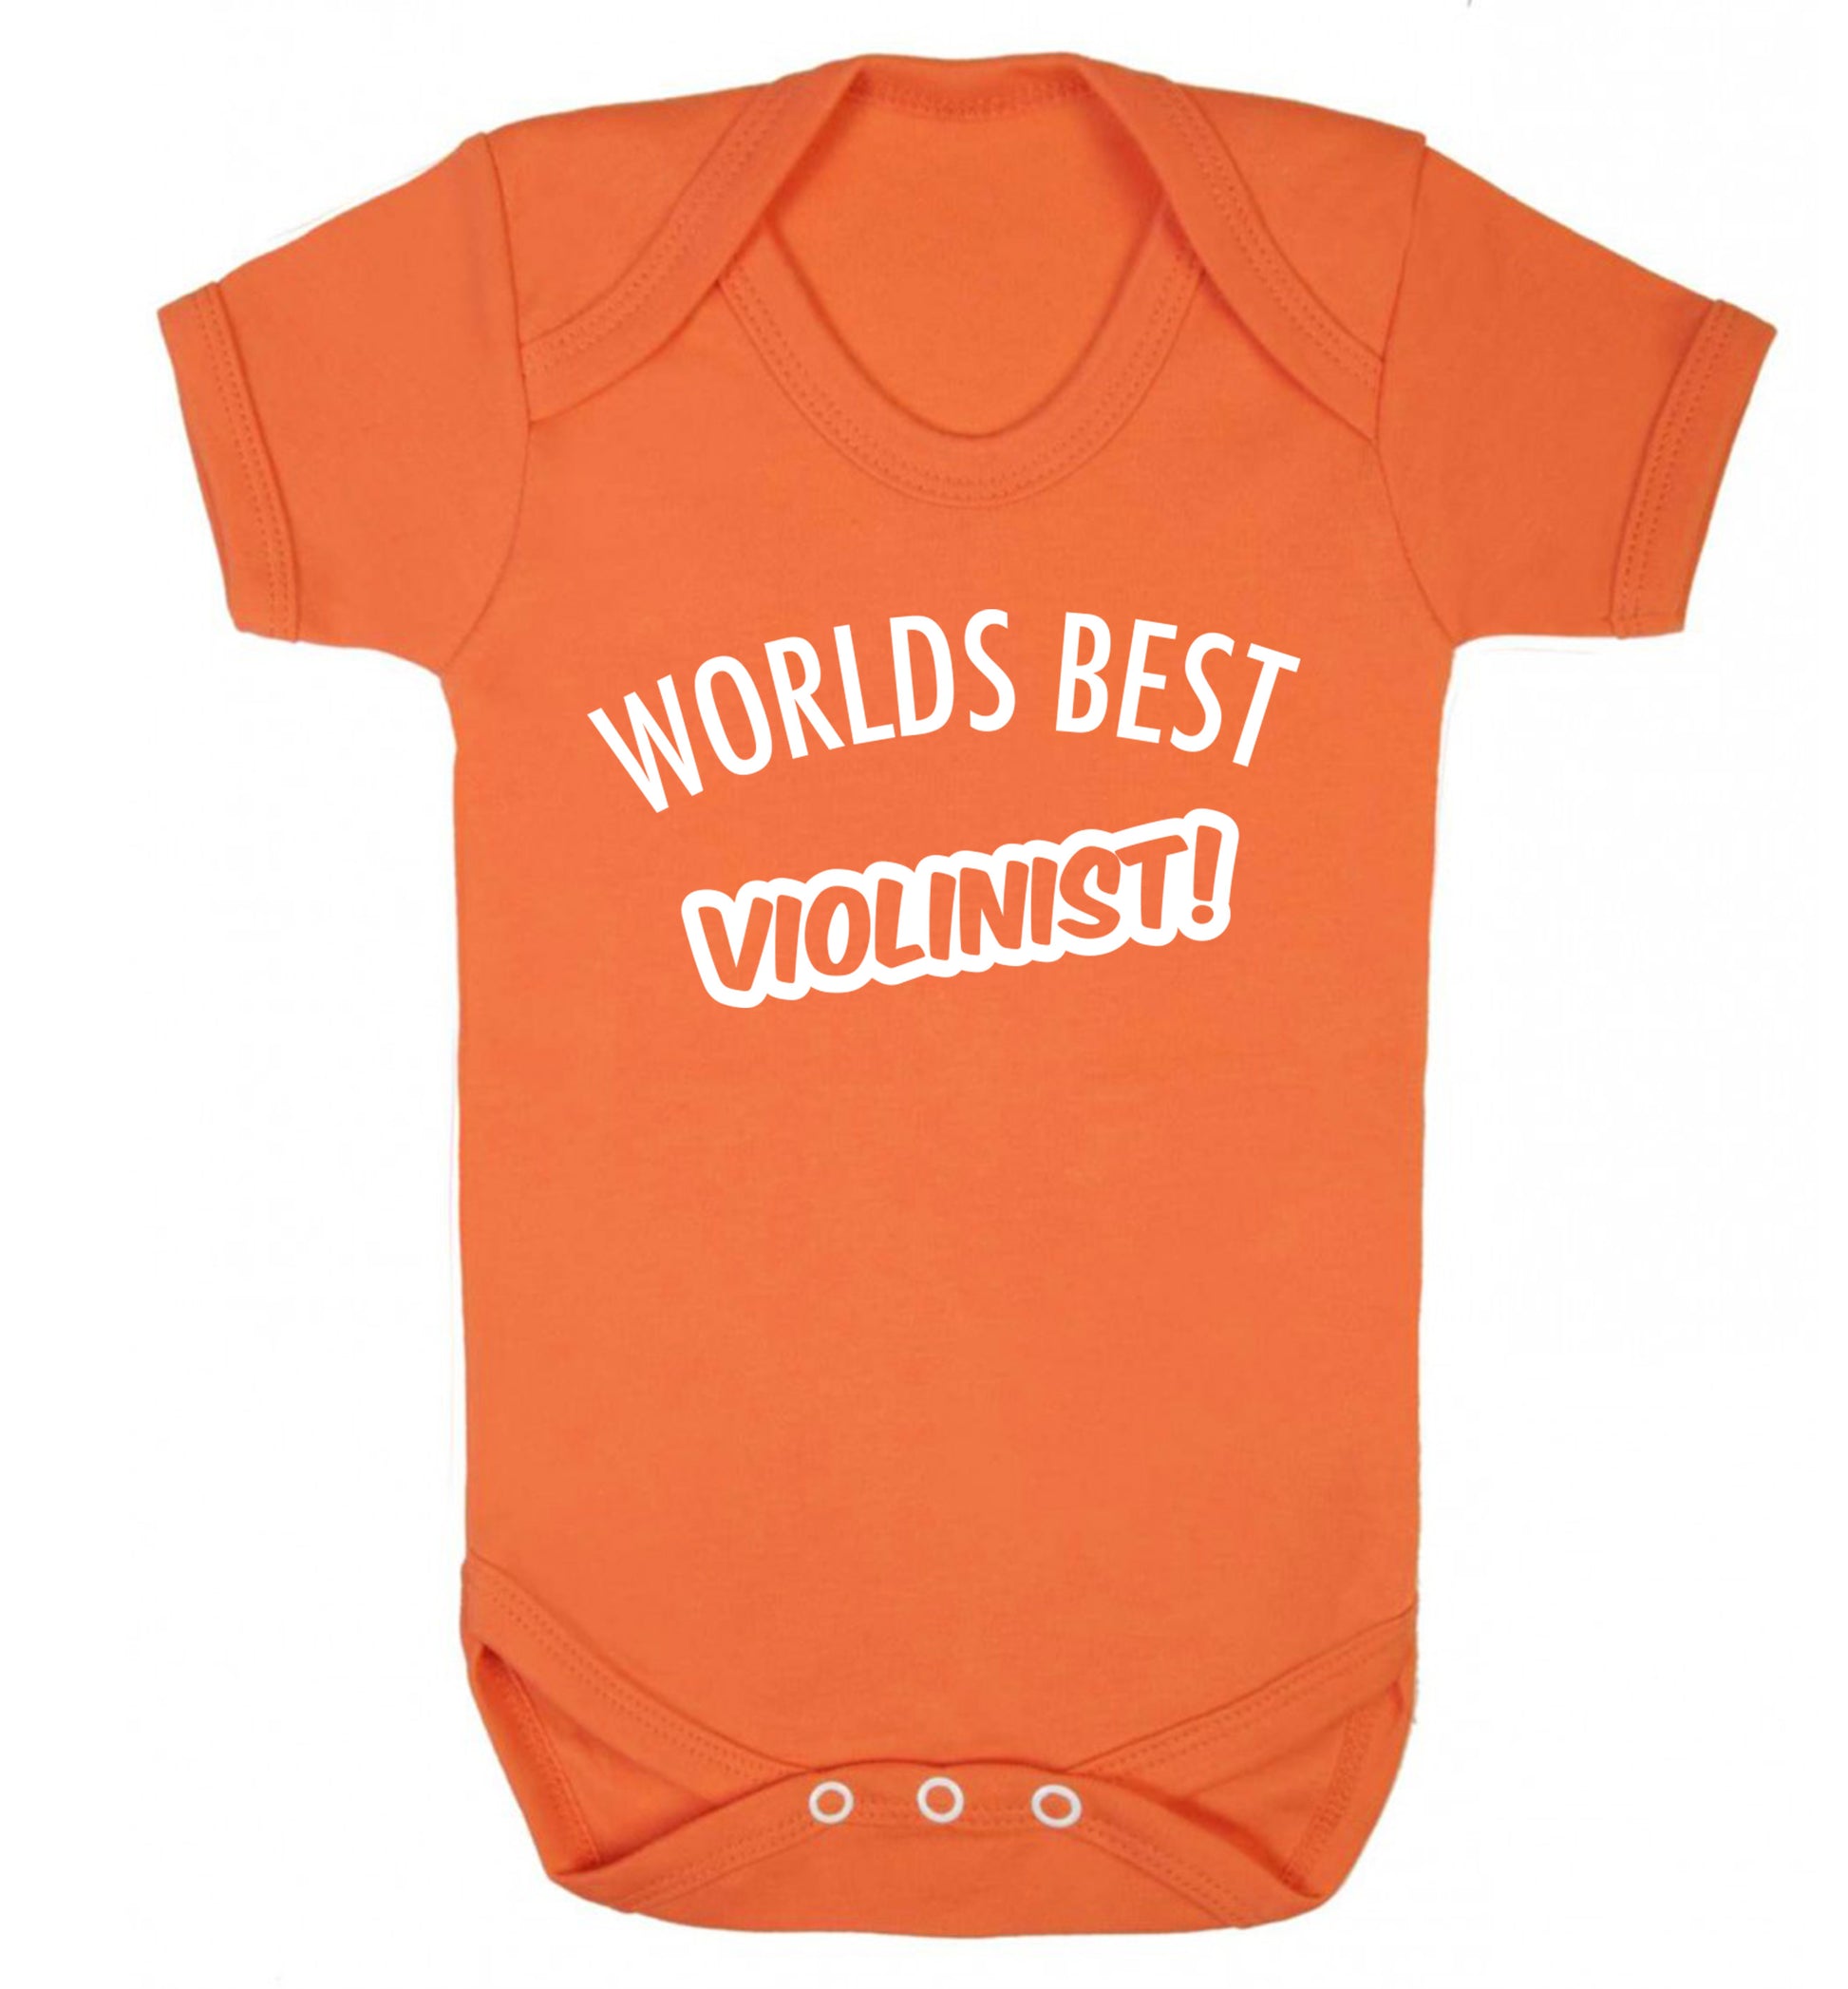 Worlds best violinist Baby Vest orange 18-24 months